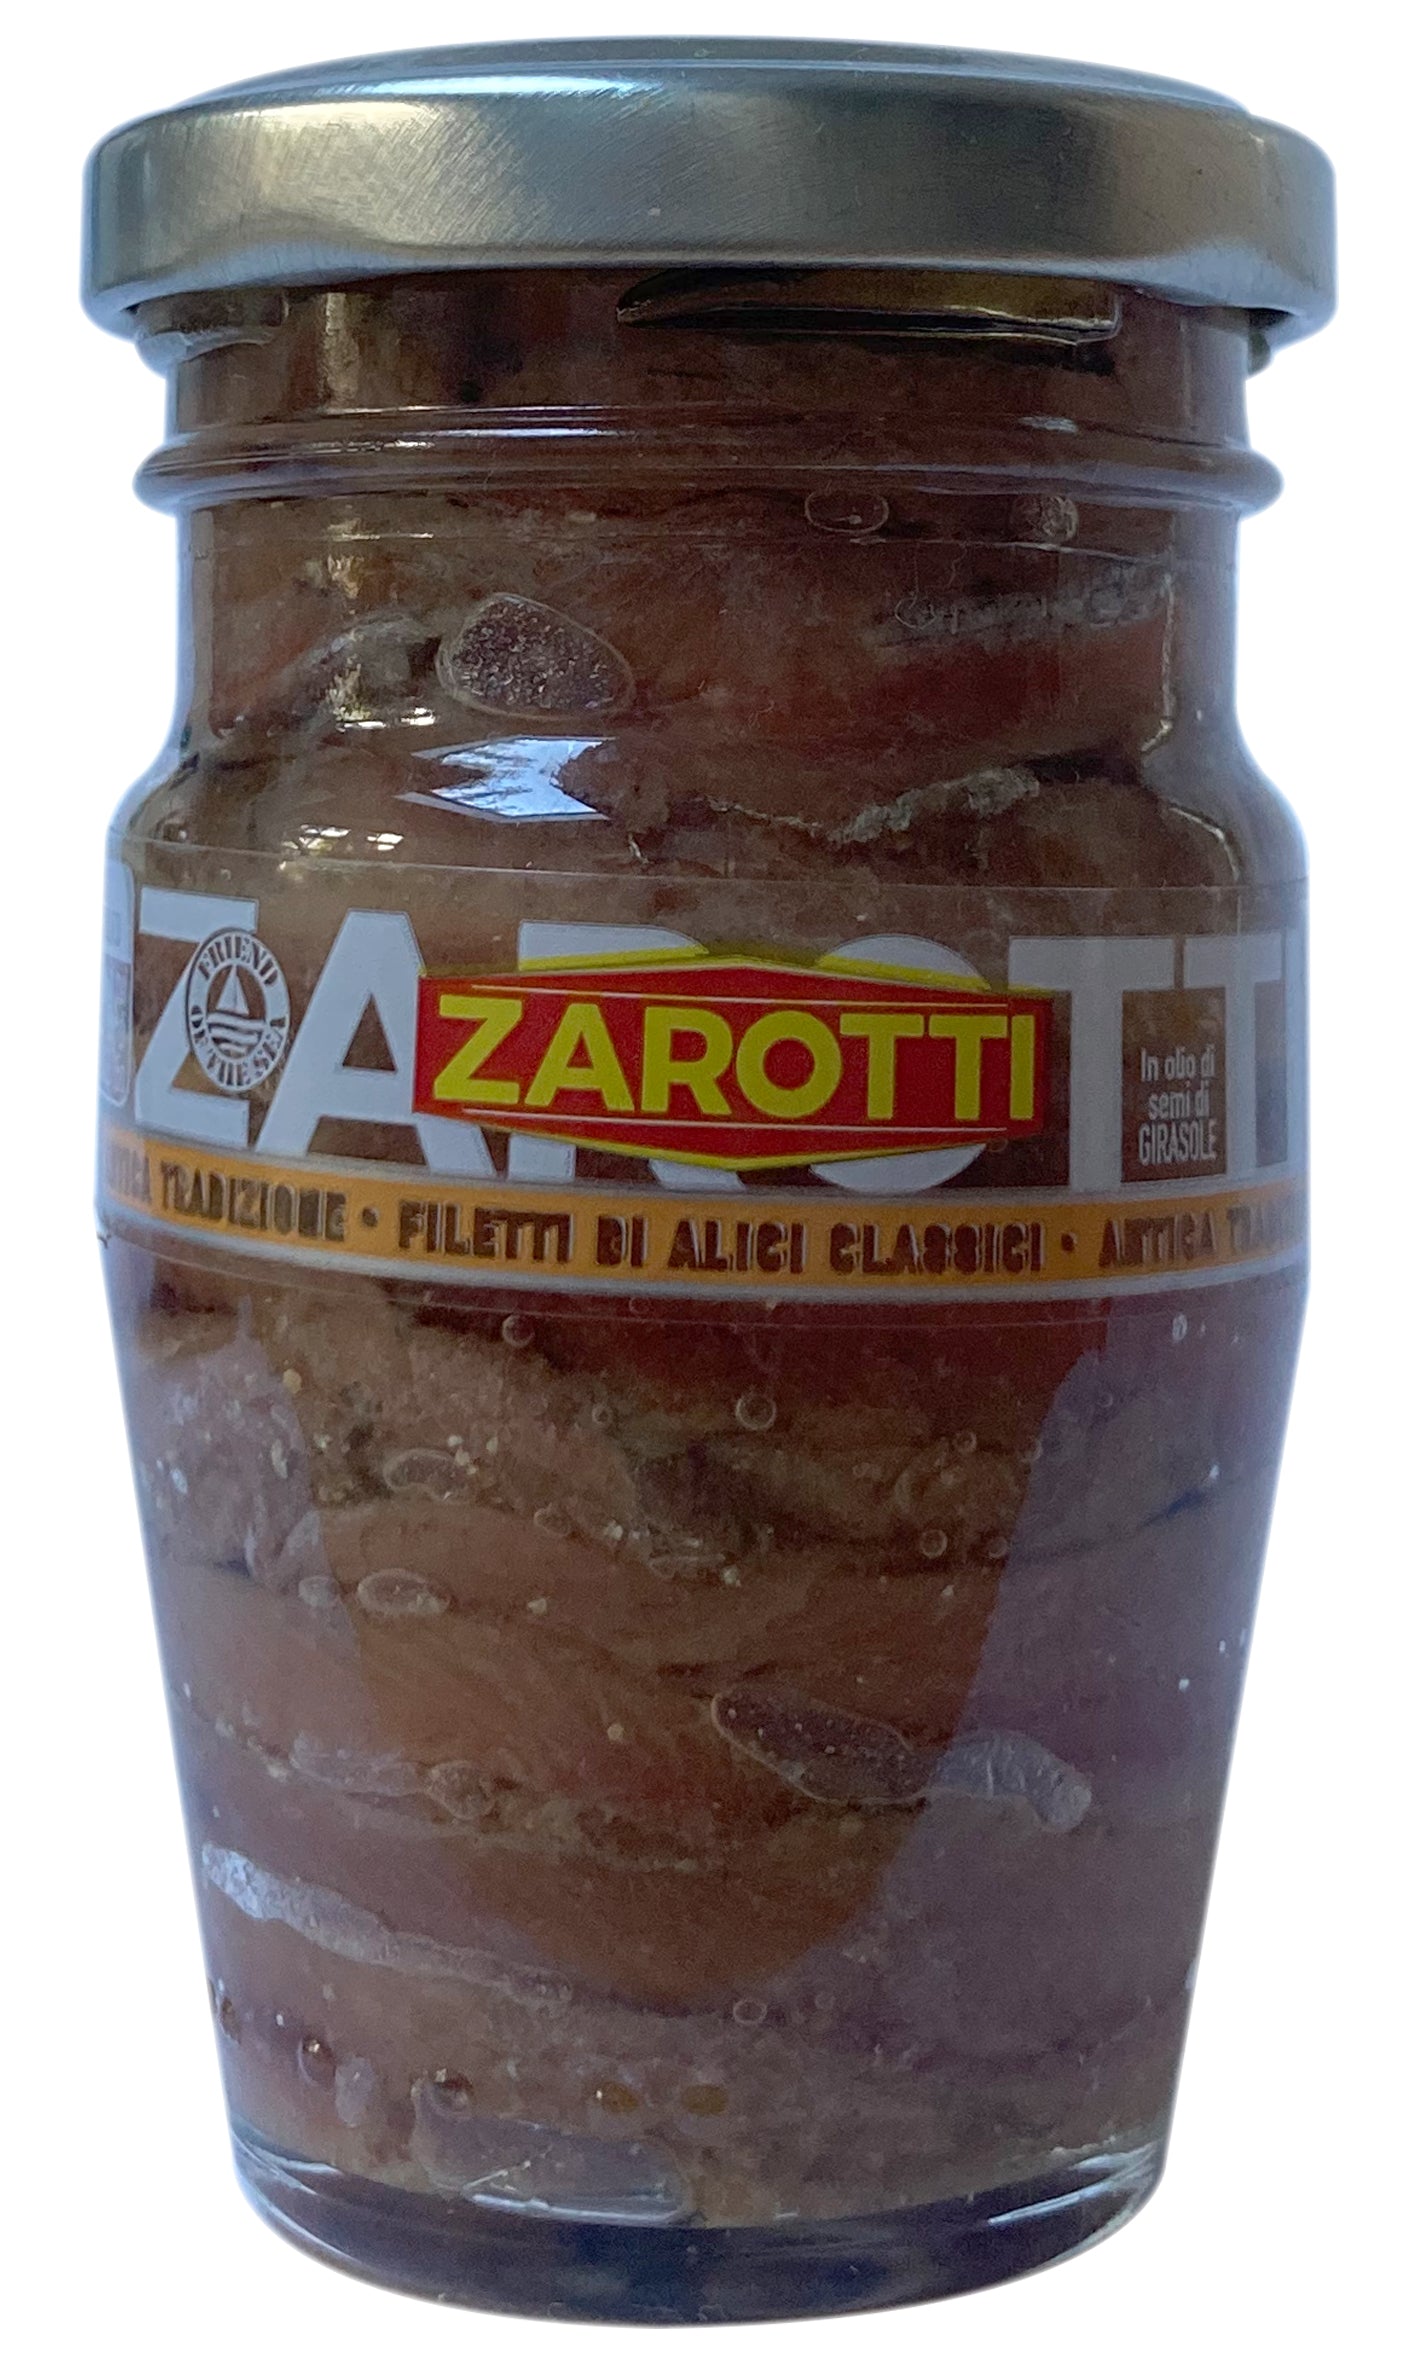 Zarotti - Anchovy filets - 90g